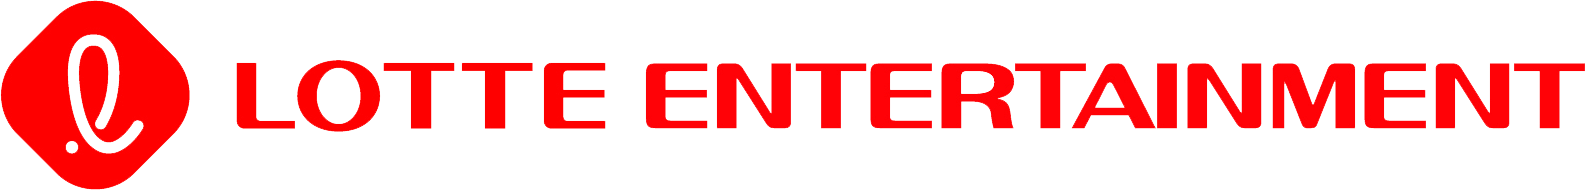 Lotte Entertainment Logo